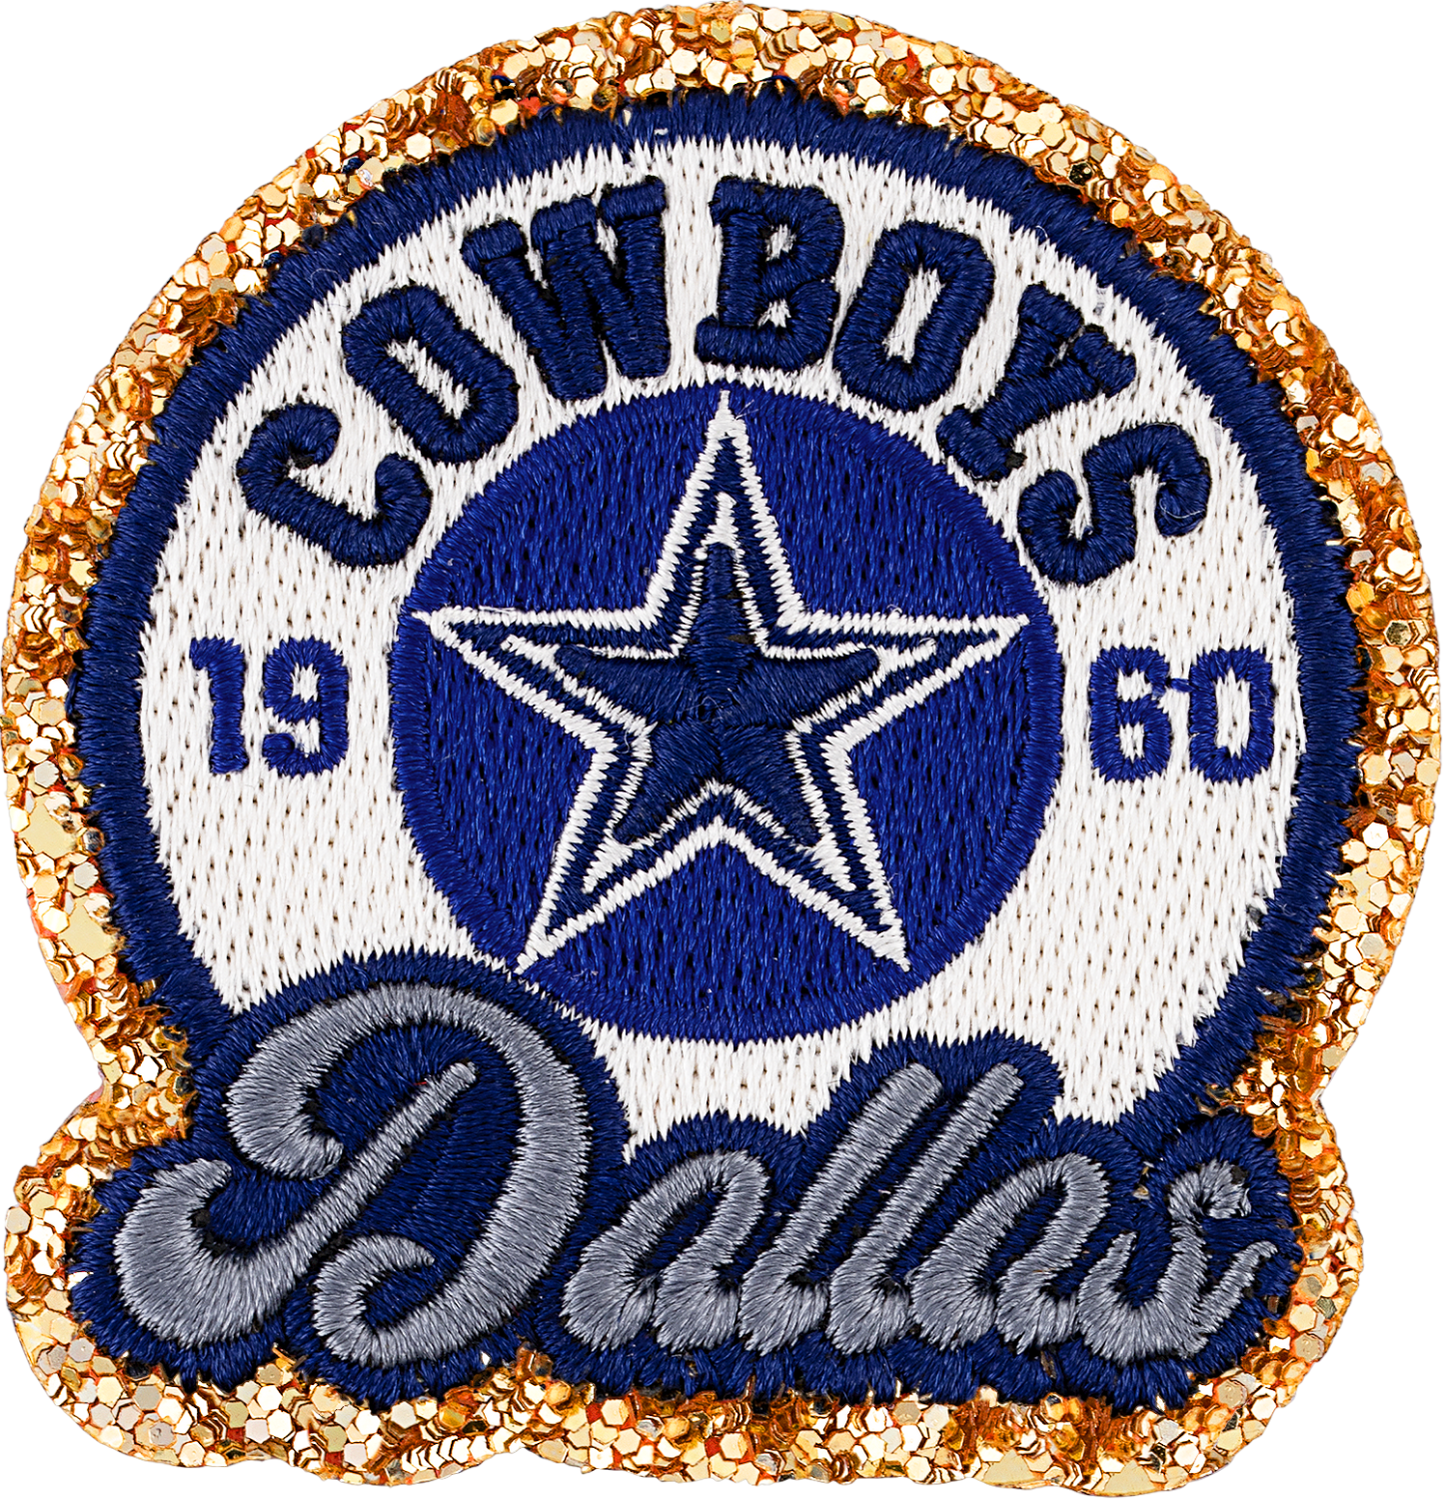 Dallas Cowboys Patch